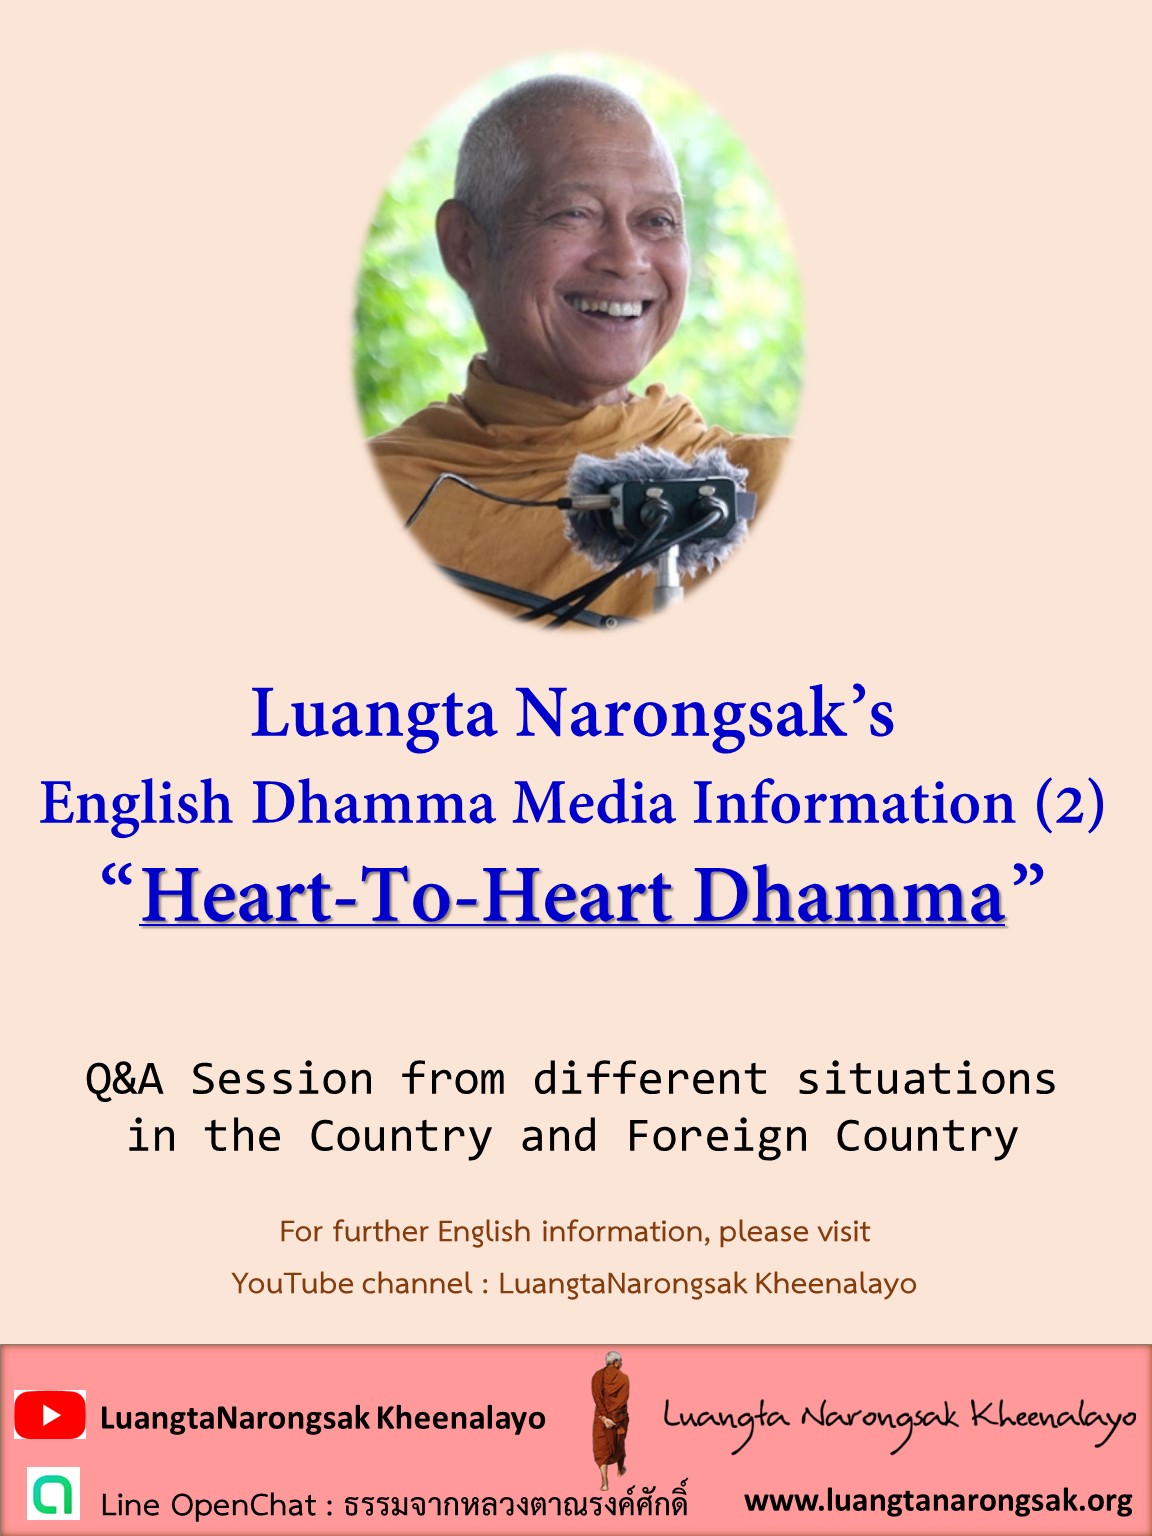 UU02 English Dhamma Information 02 Heart To Heart Dhamma